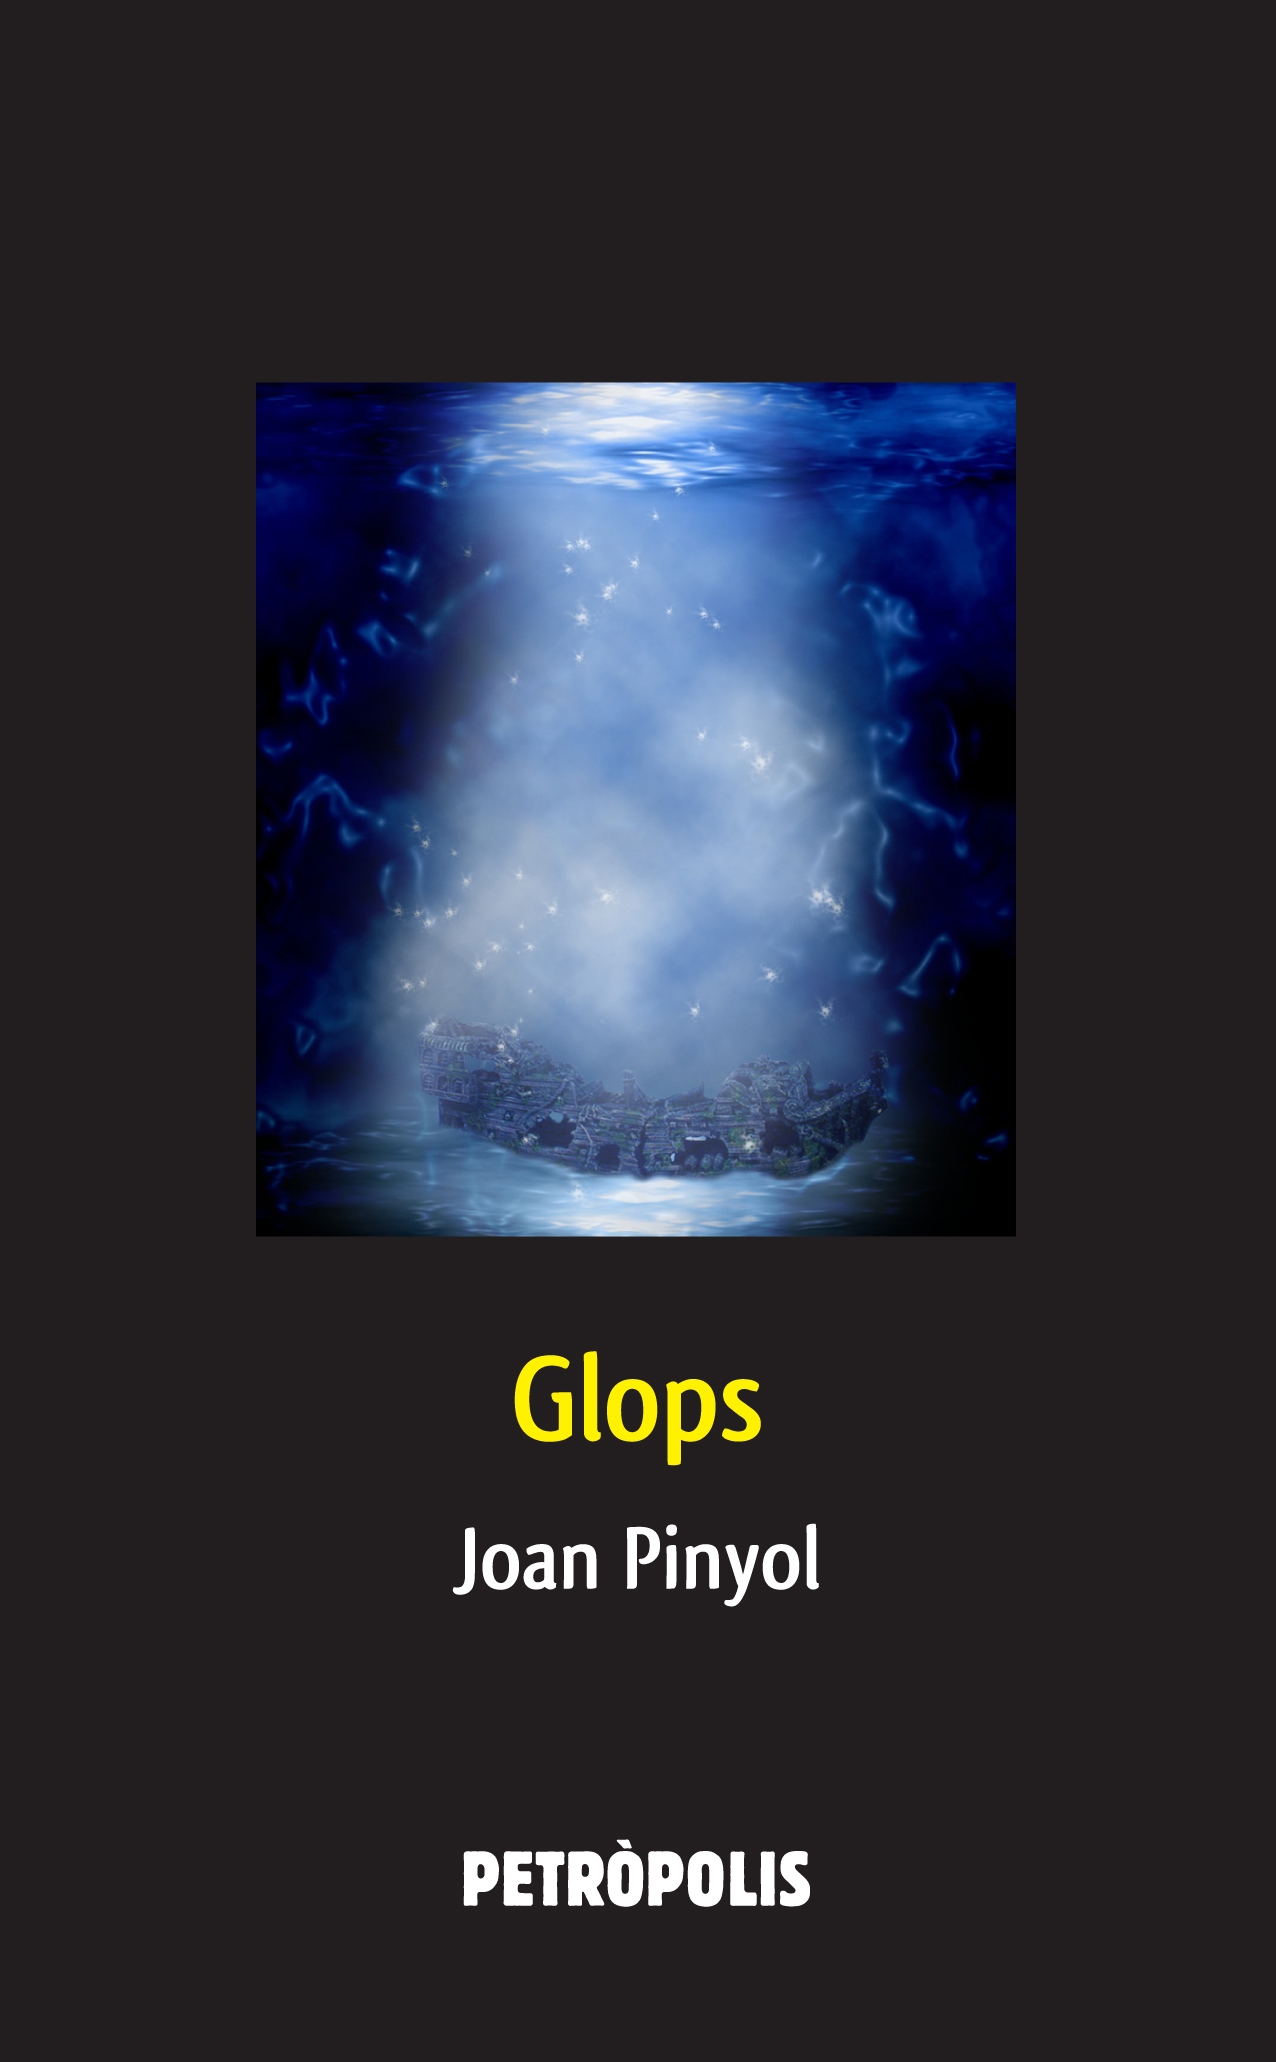 Coberta del llibre 'Glops' de Joan Pinyol